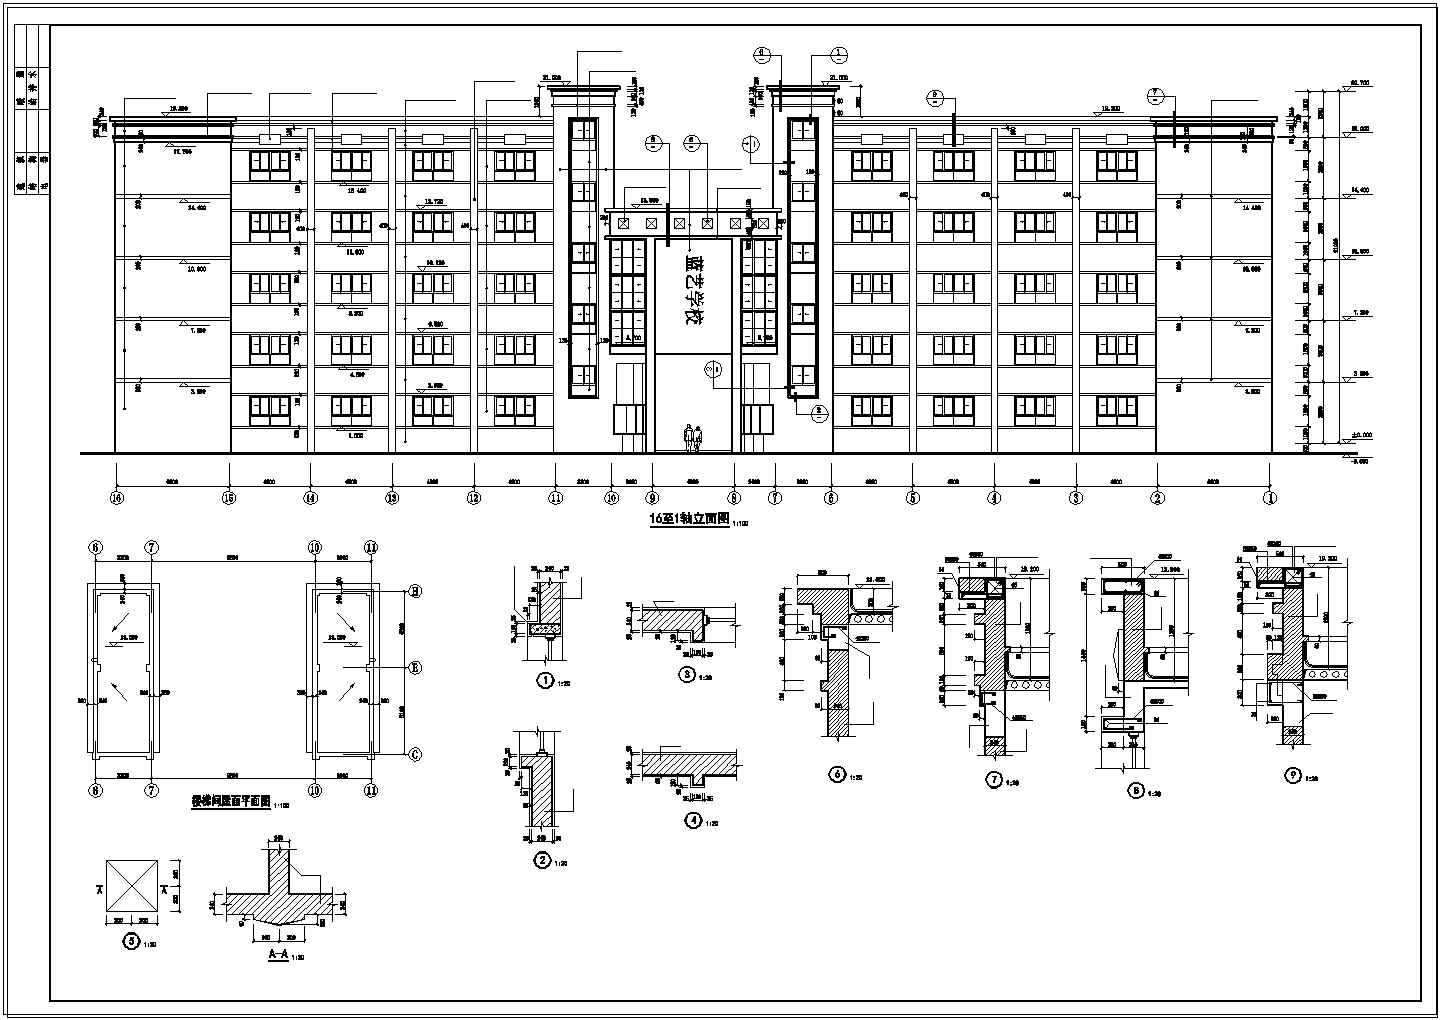 3294.6平米五层框架综合教学楼工程量计算及施工组织（含建筑结构cad图、平面图、进度图、网络图）